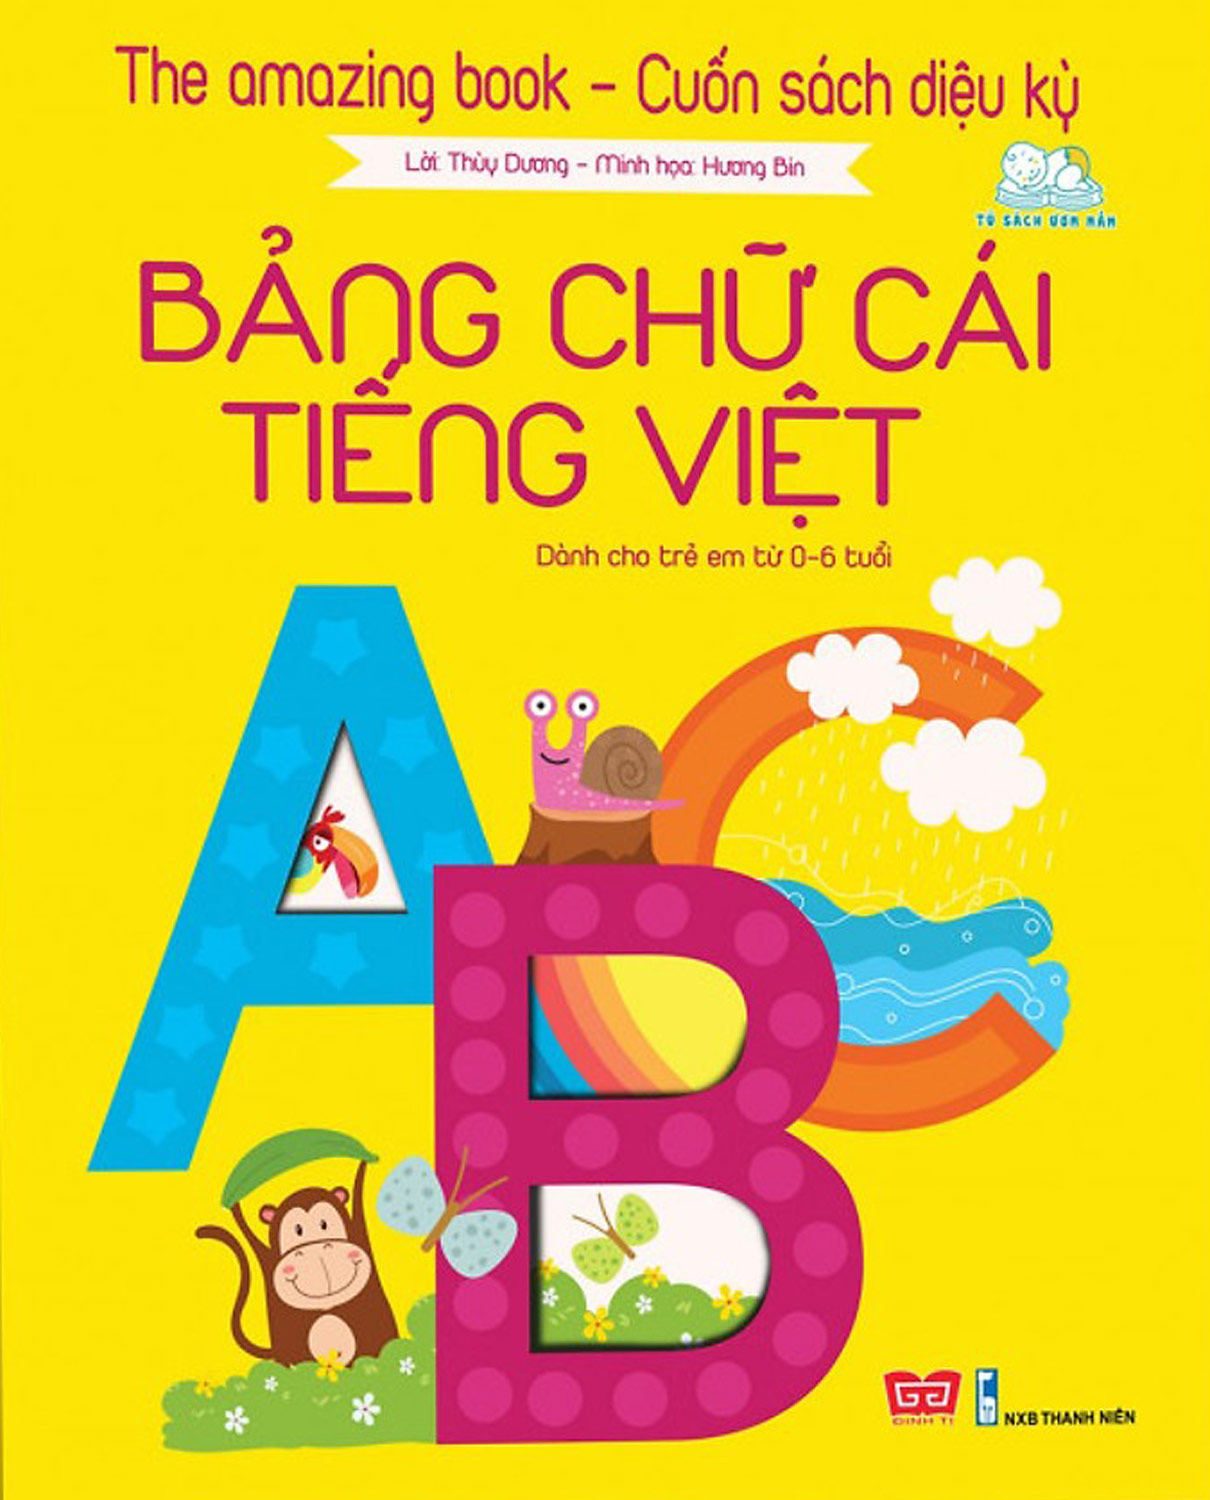 The Amazing Book - Cuốn Sách Diệu Kỳ - Bảng Chữ Cái Tiếng Việt